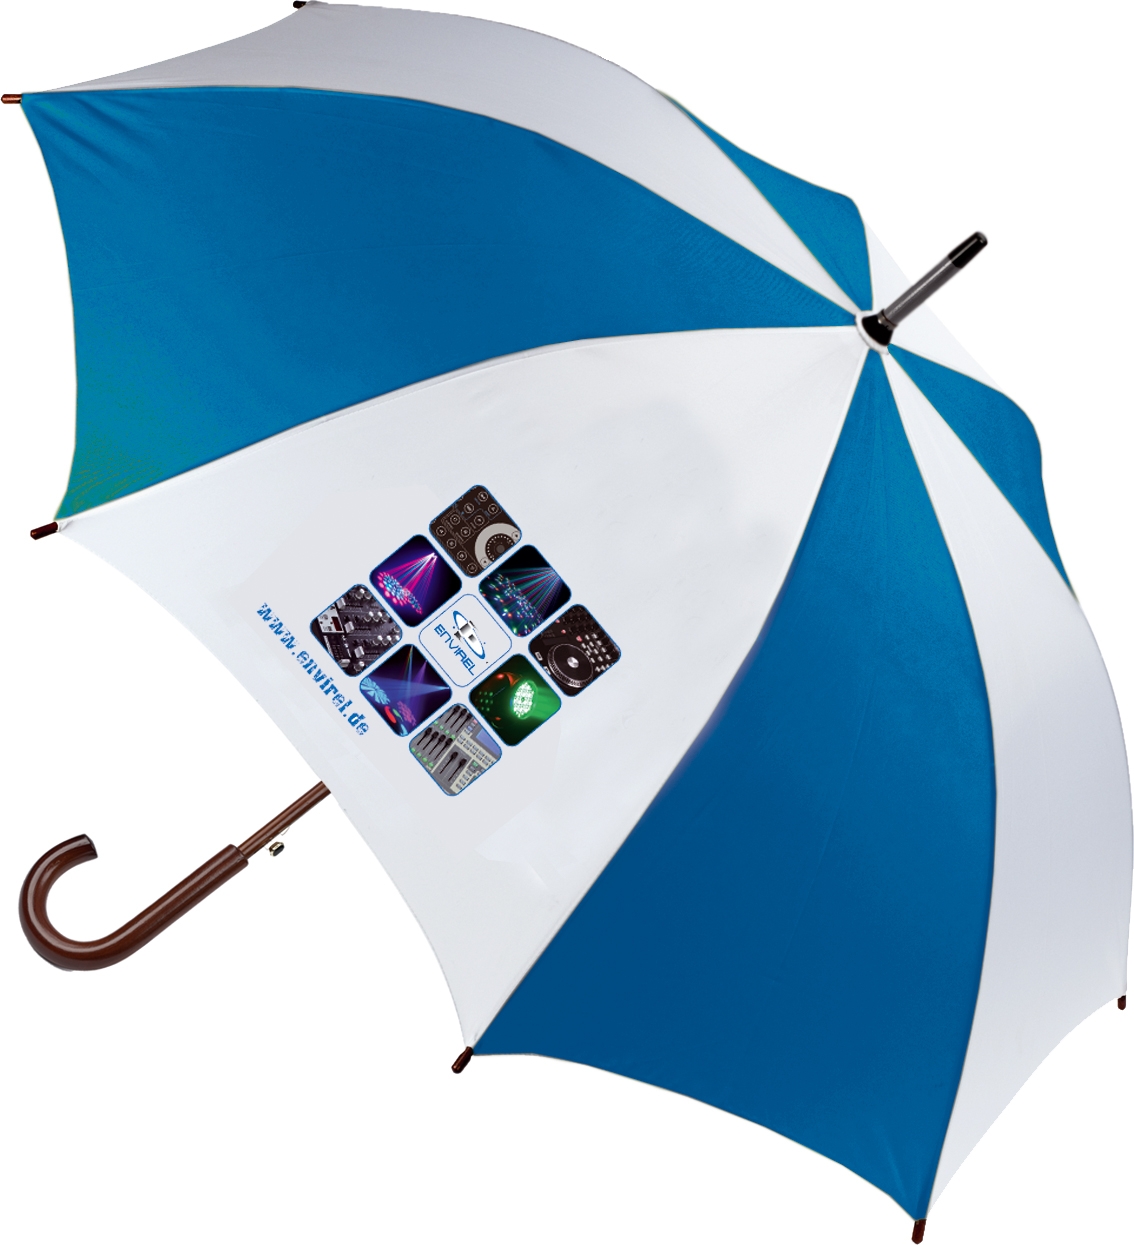 Envirel Regenschirm 105cm im Durchmesser